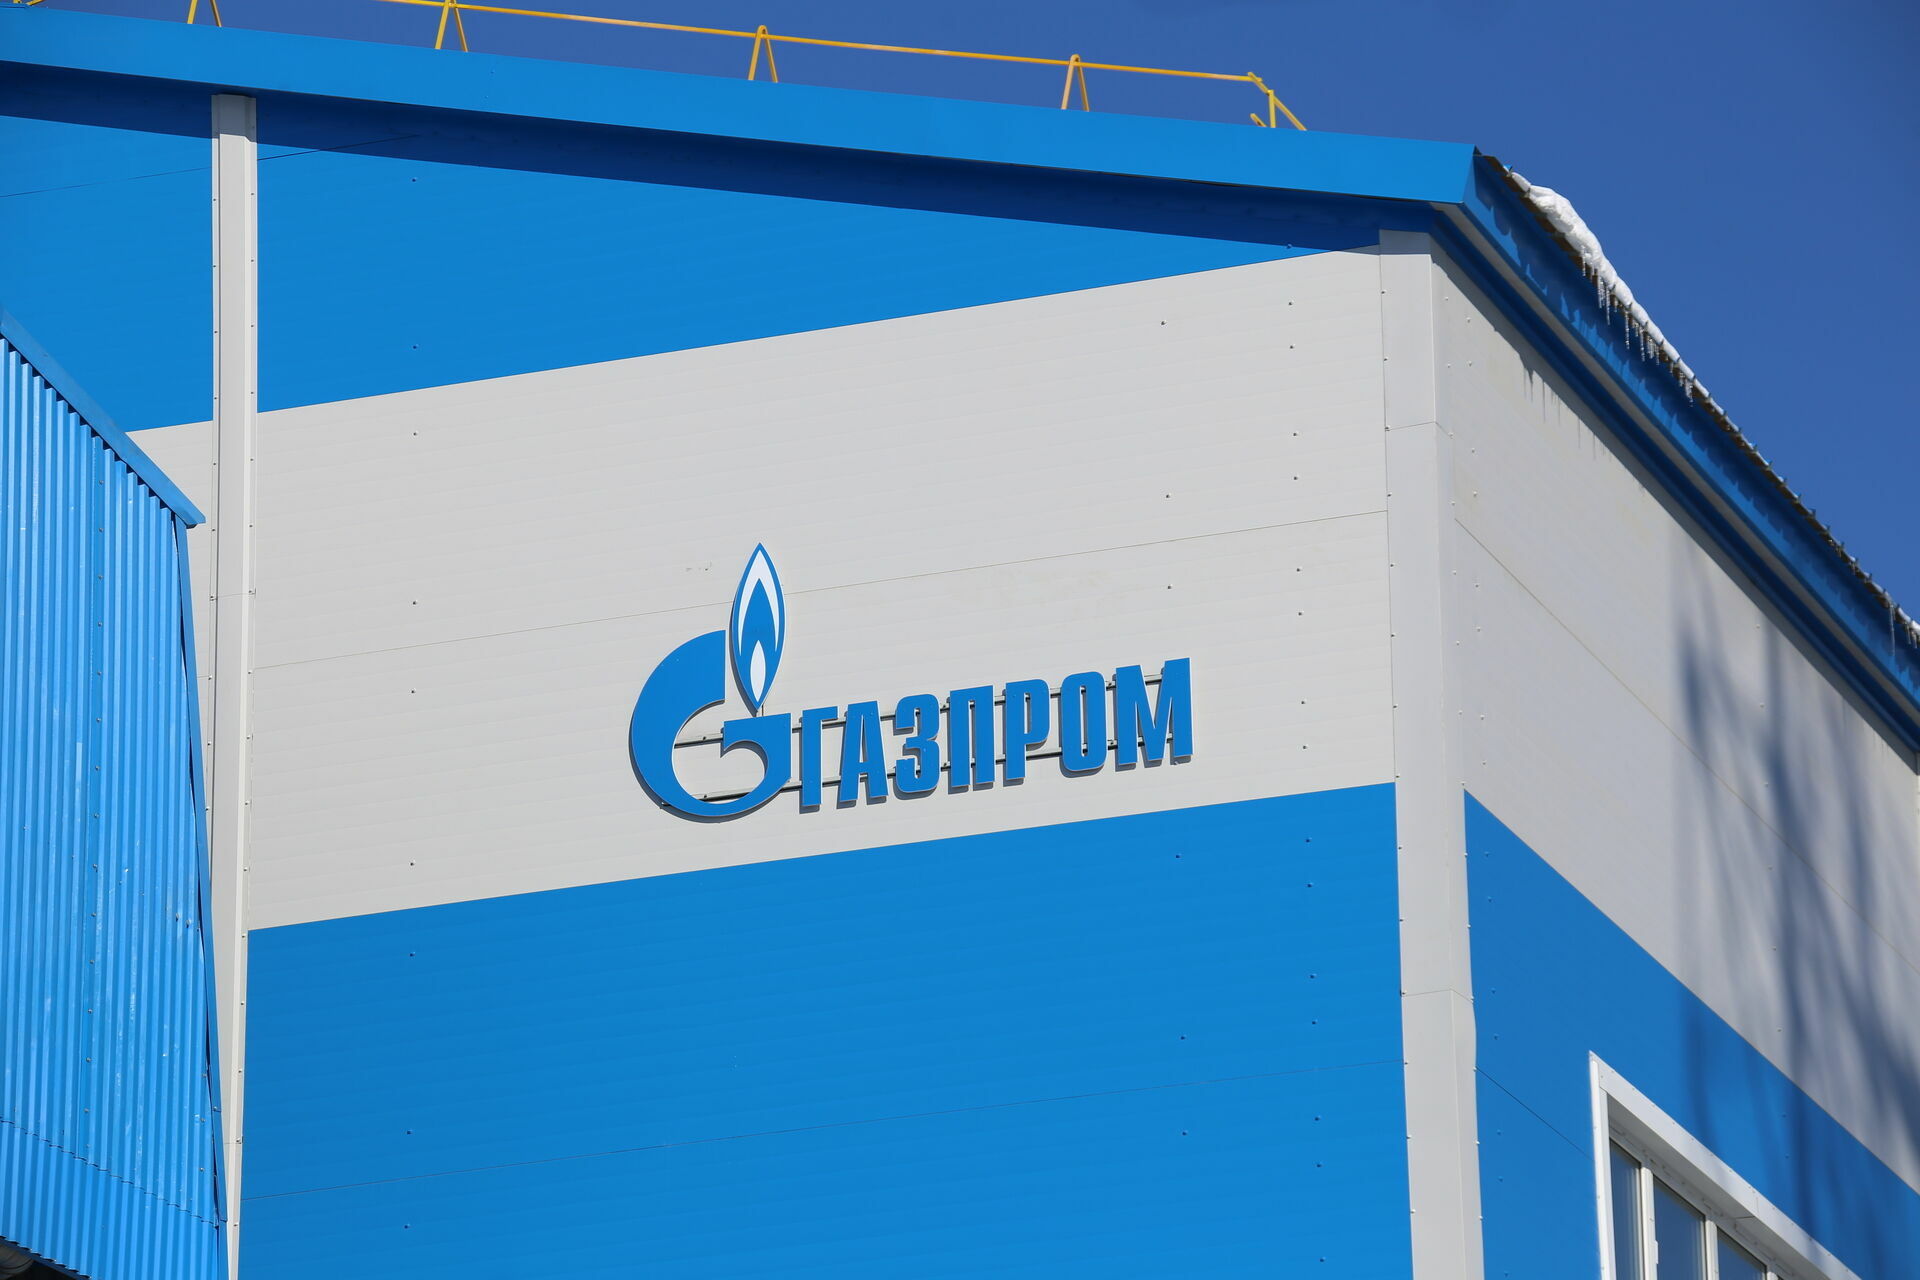 Ростехнадзор: оборудование «Газпрома» в Вадском районе, где отравились дети, исправно